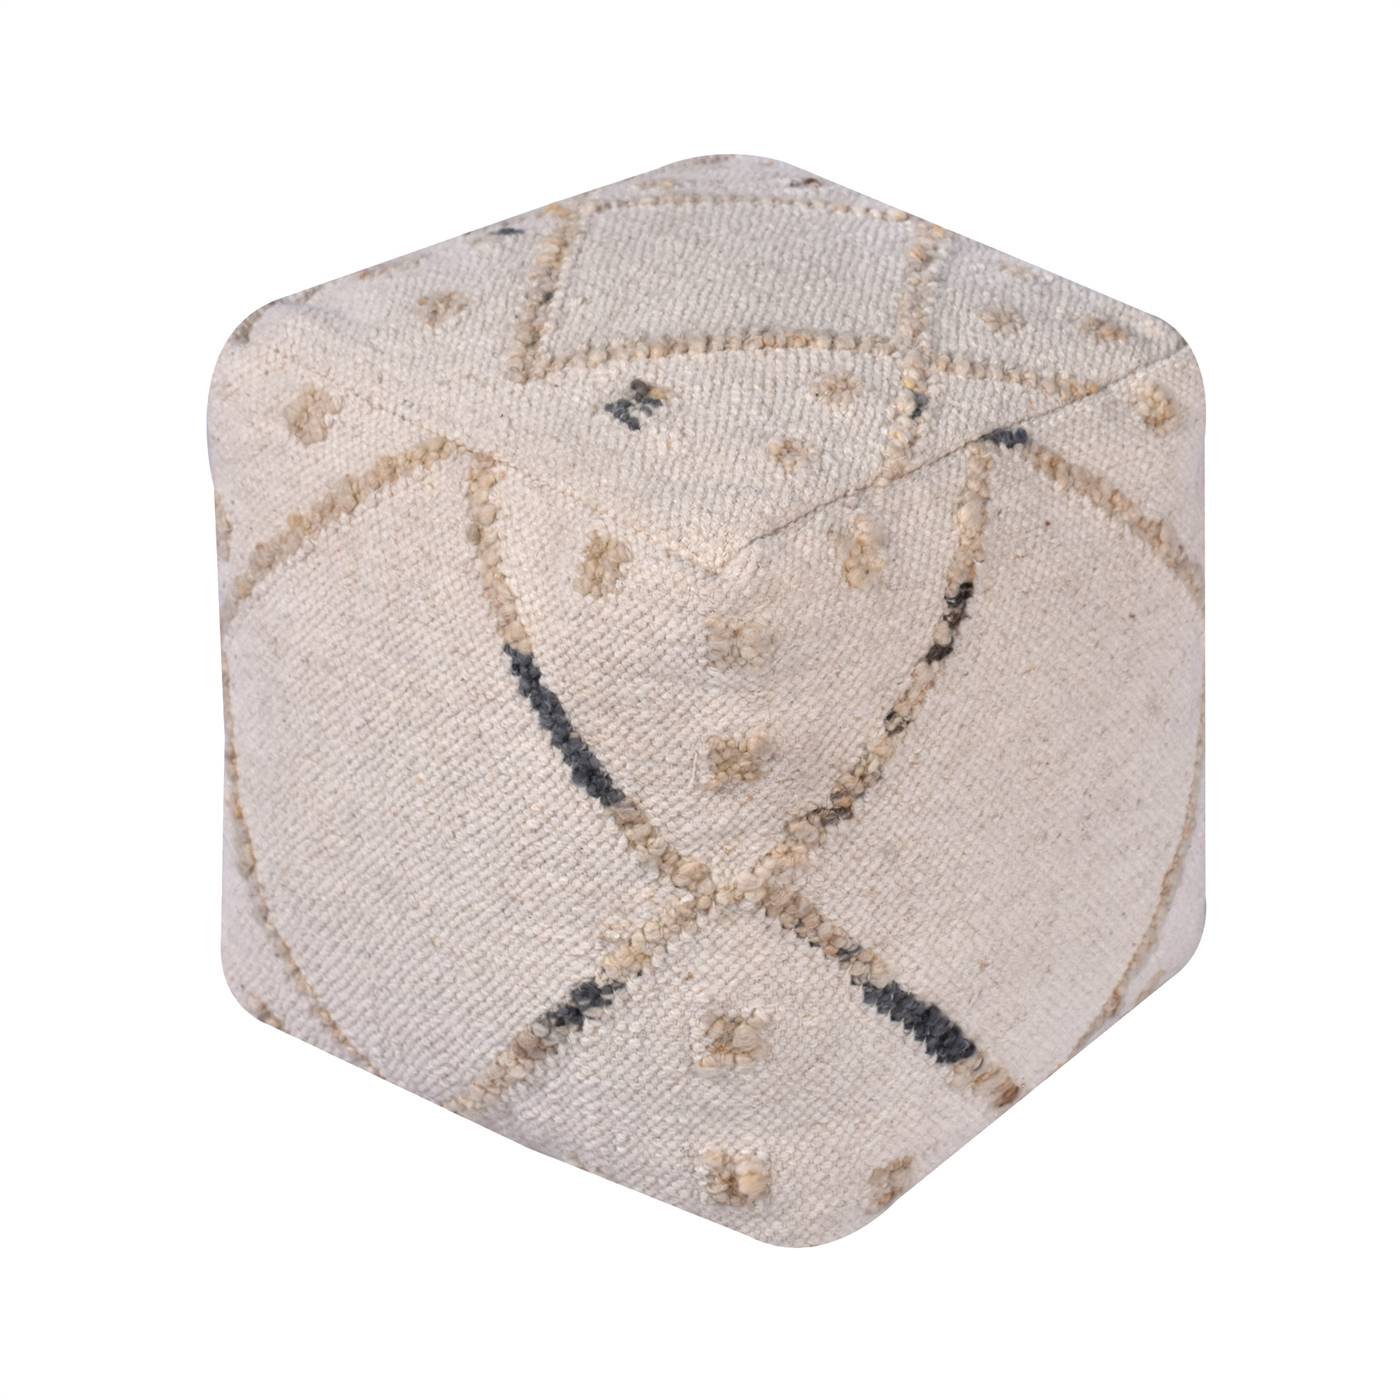 Tarascon Pouf, 40x40x40 cm, Natural White, Wool, Punja Kelim, Pitloom, Flat Weave